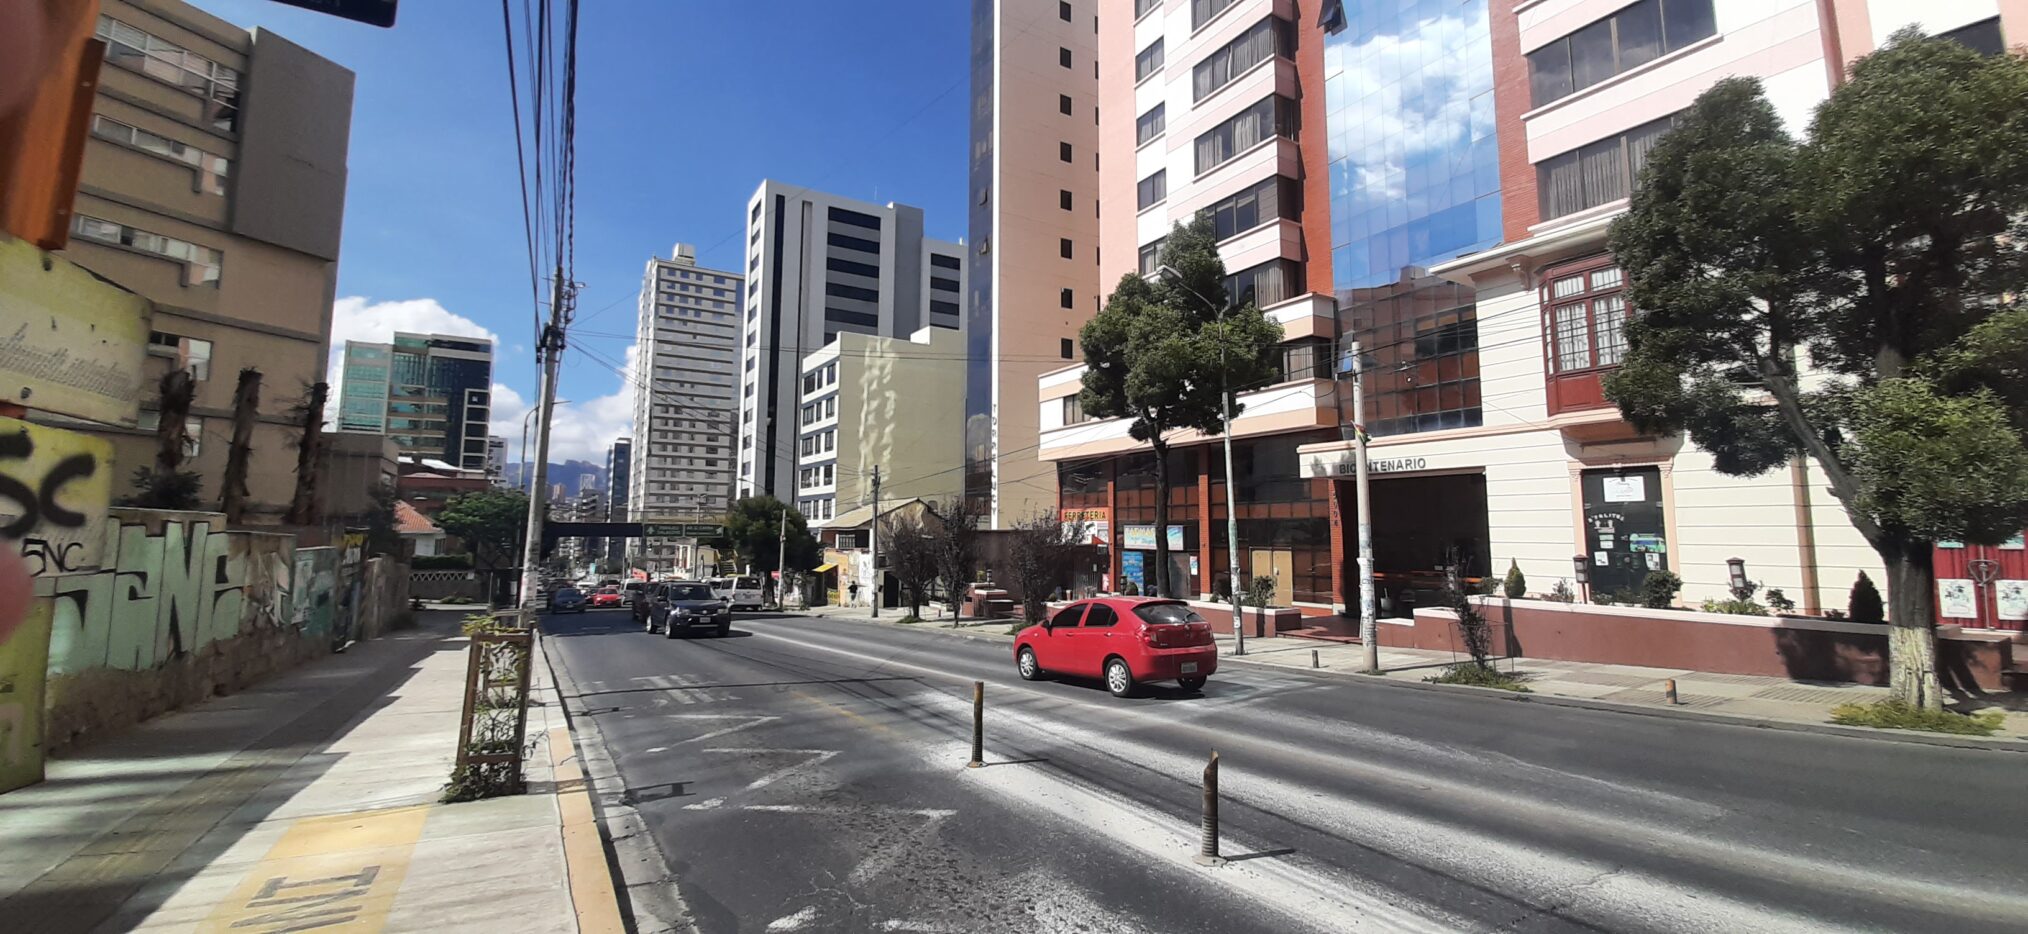 La Avenida Hernando Siles de Obrajes, con edificios de apartamentos de hasta 25 pisos